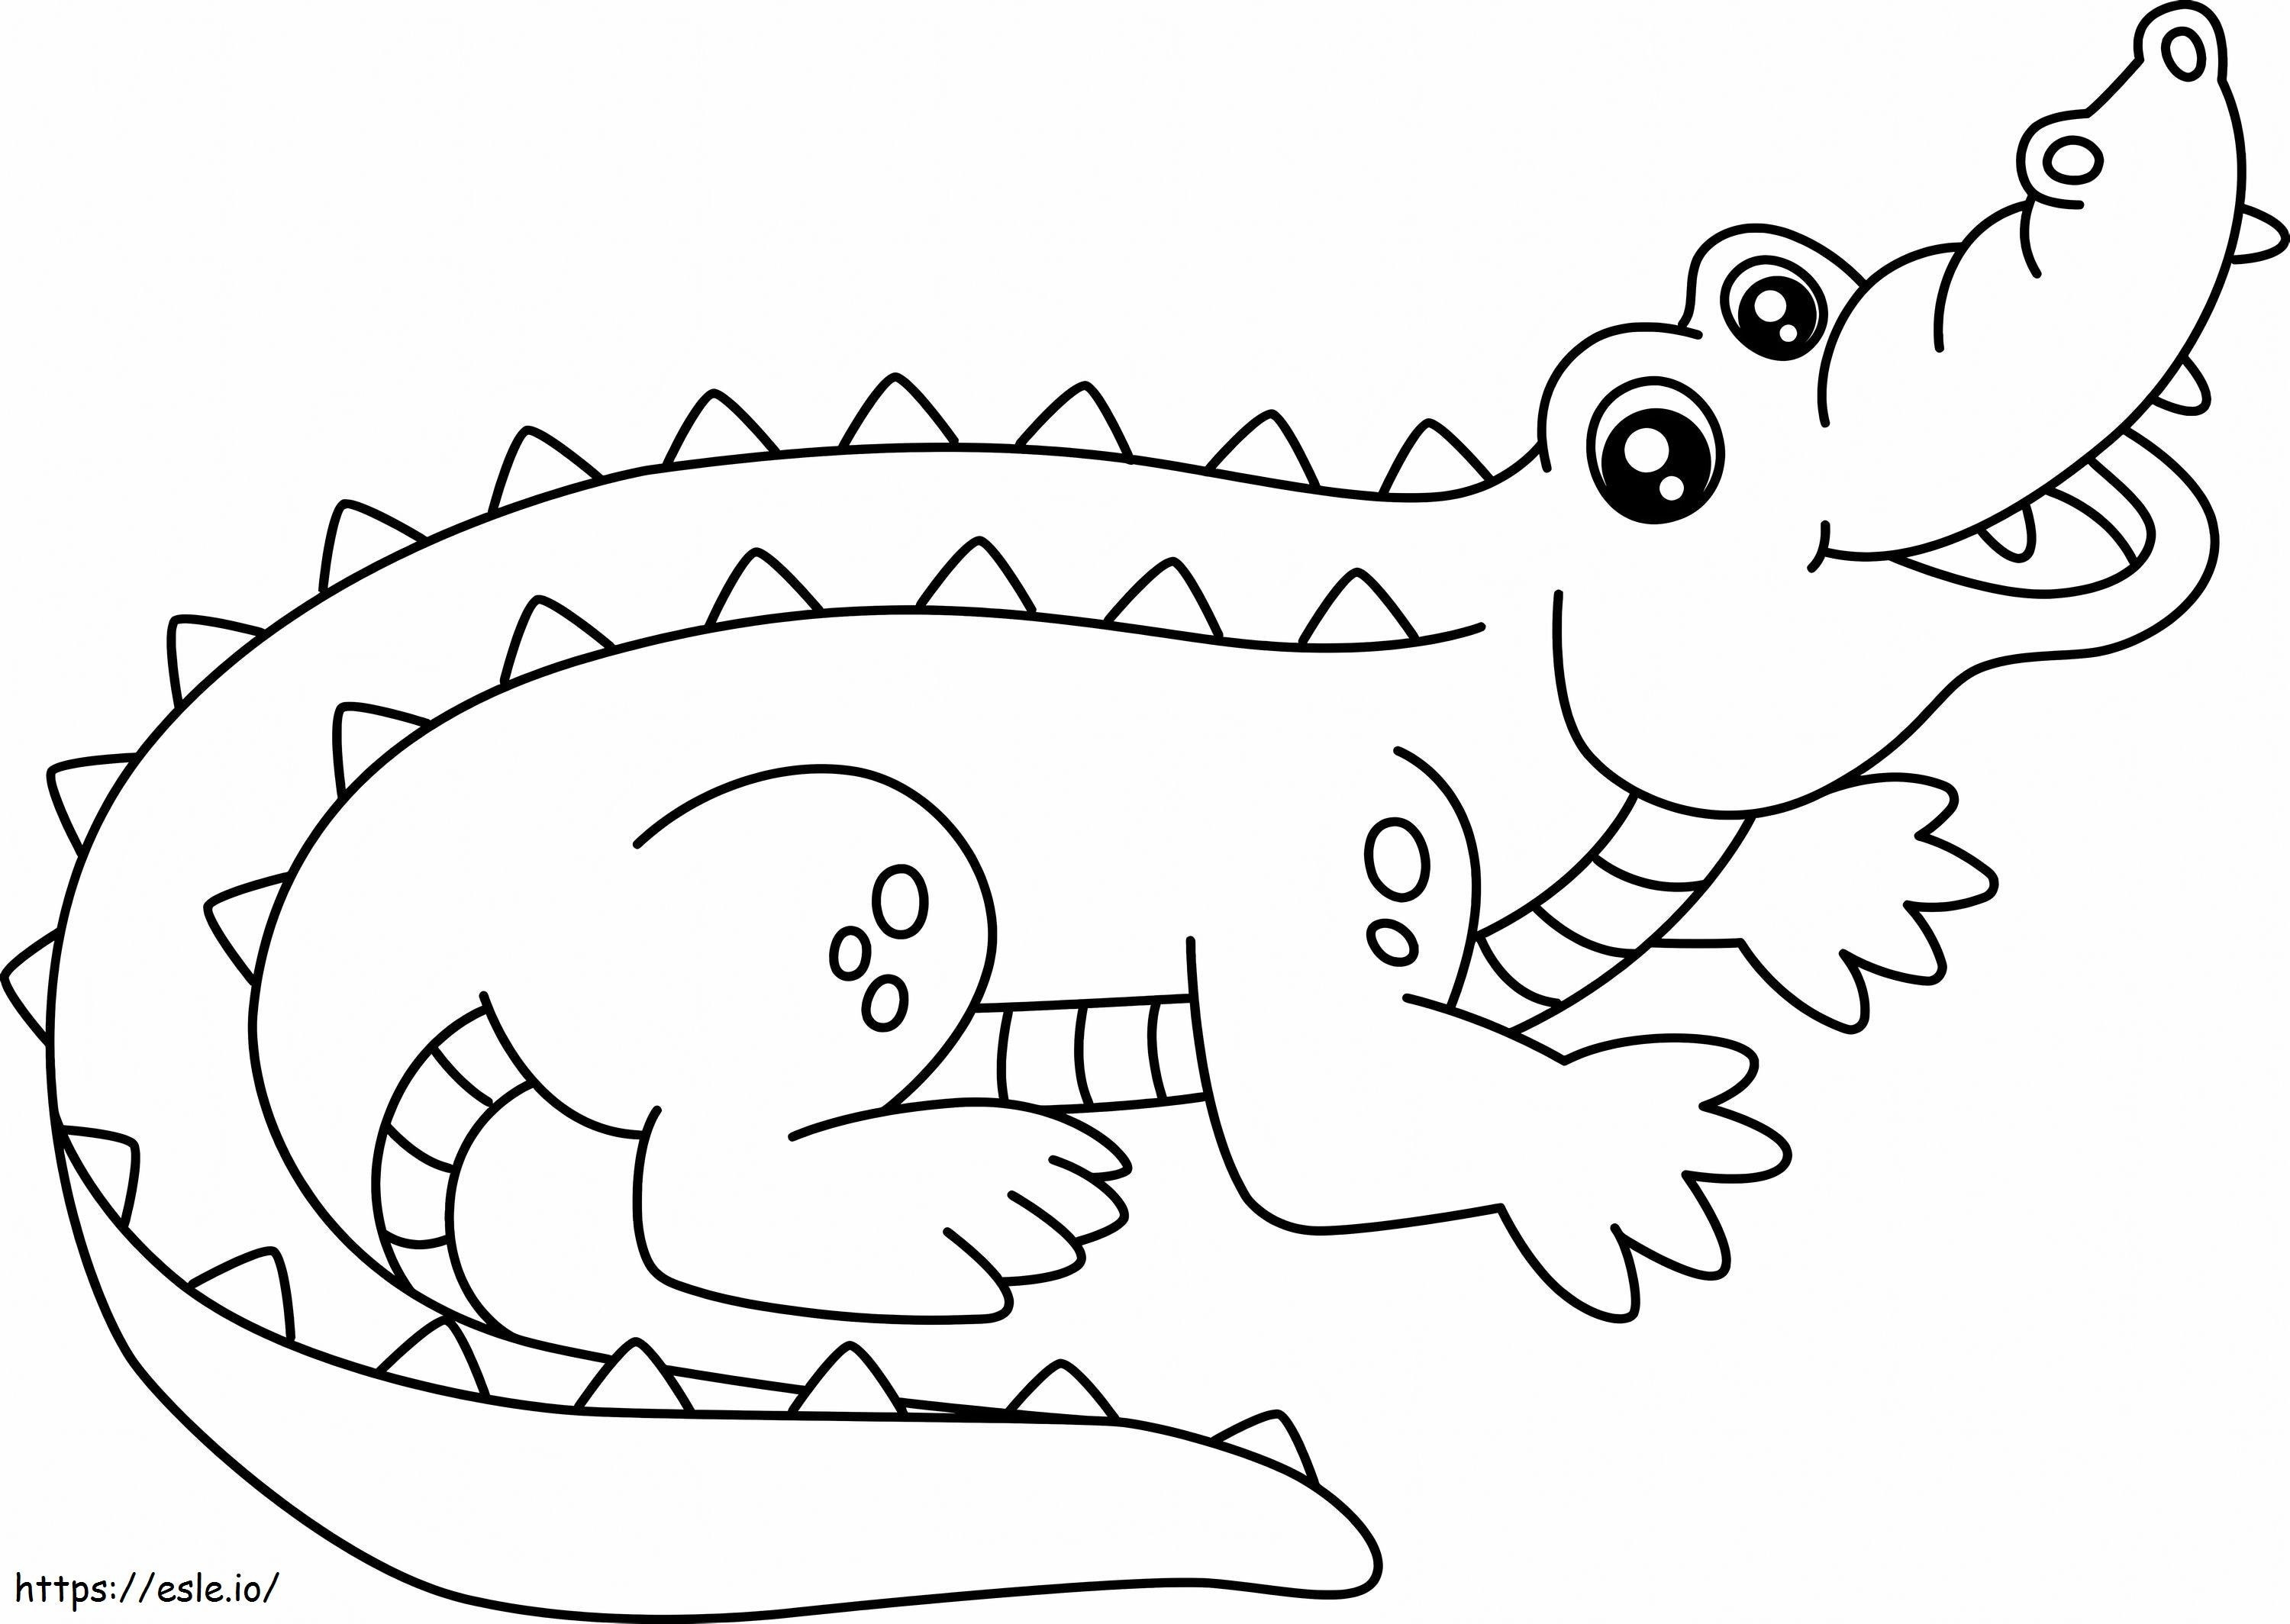 Bom Crocodilo 1 para colorir